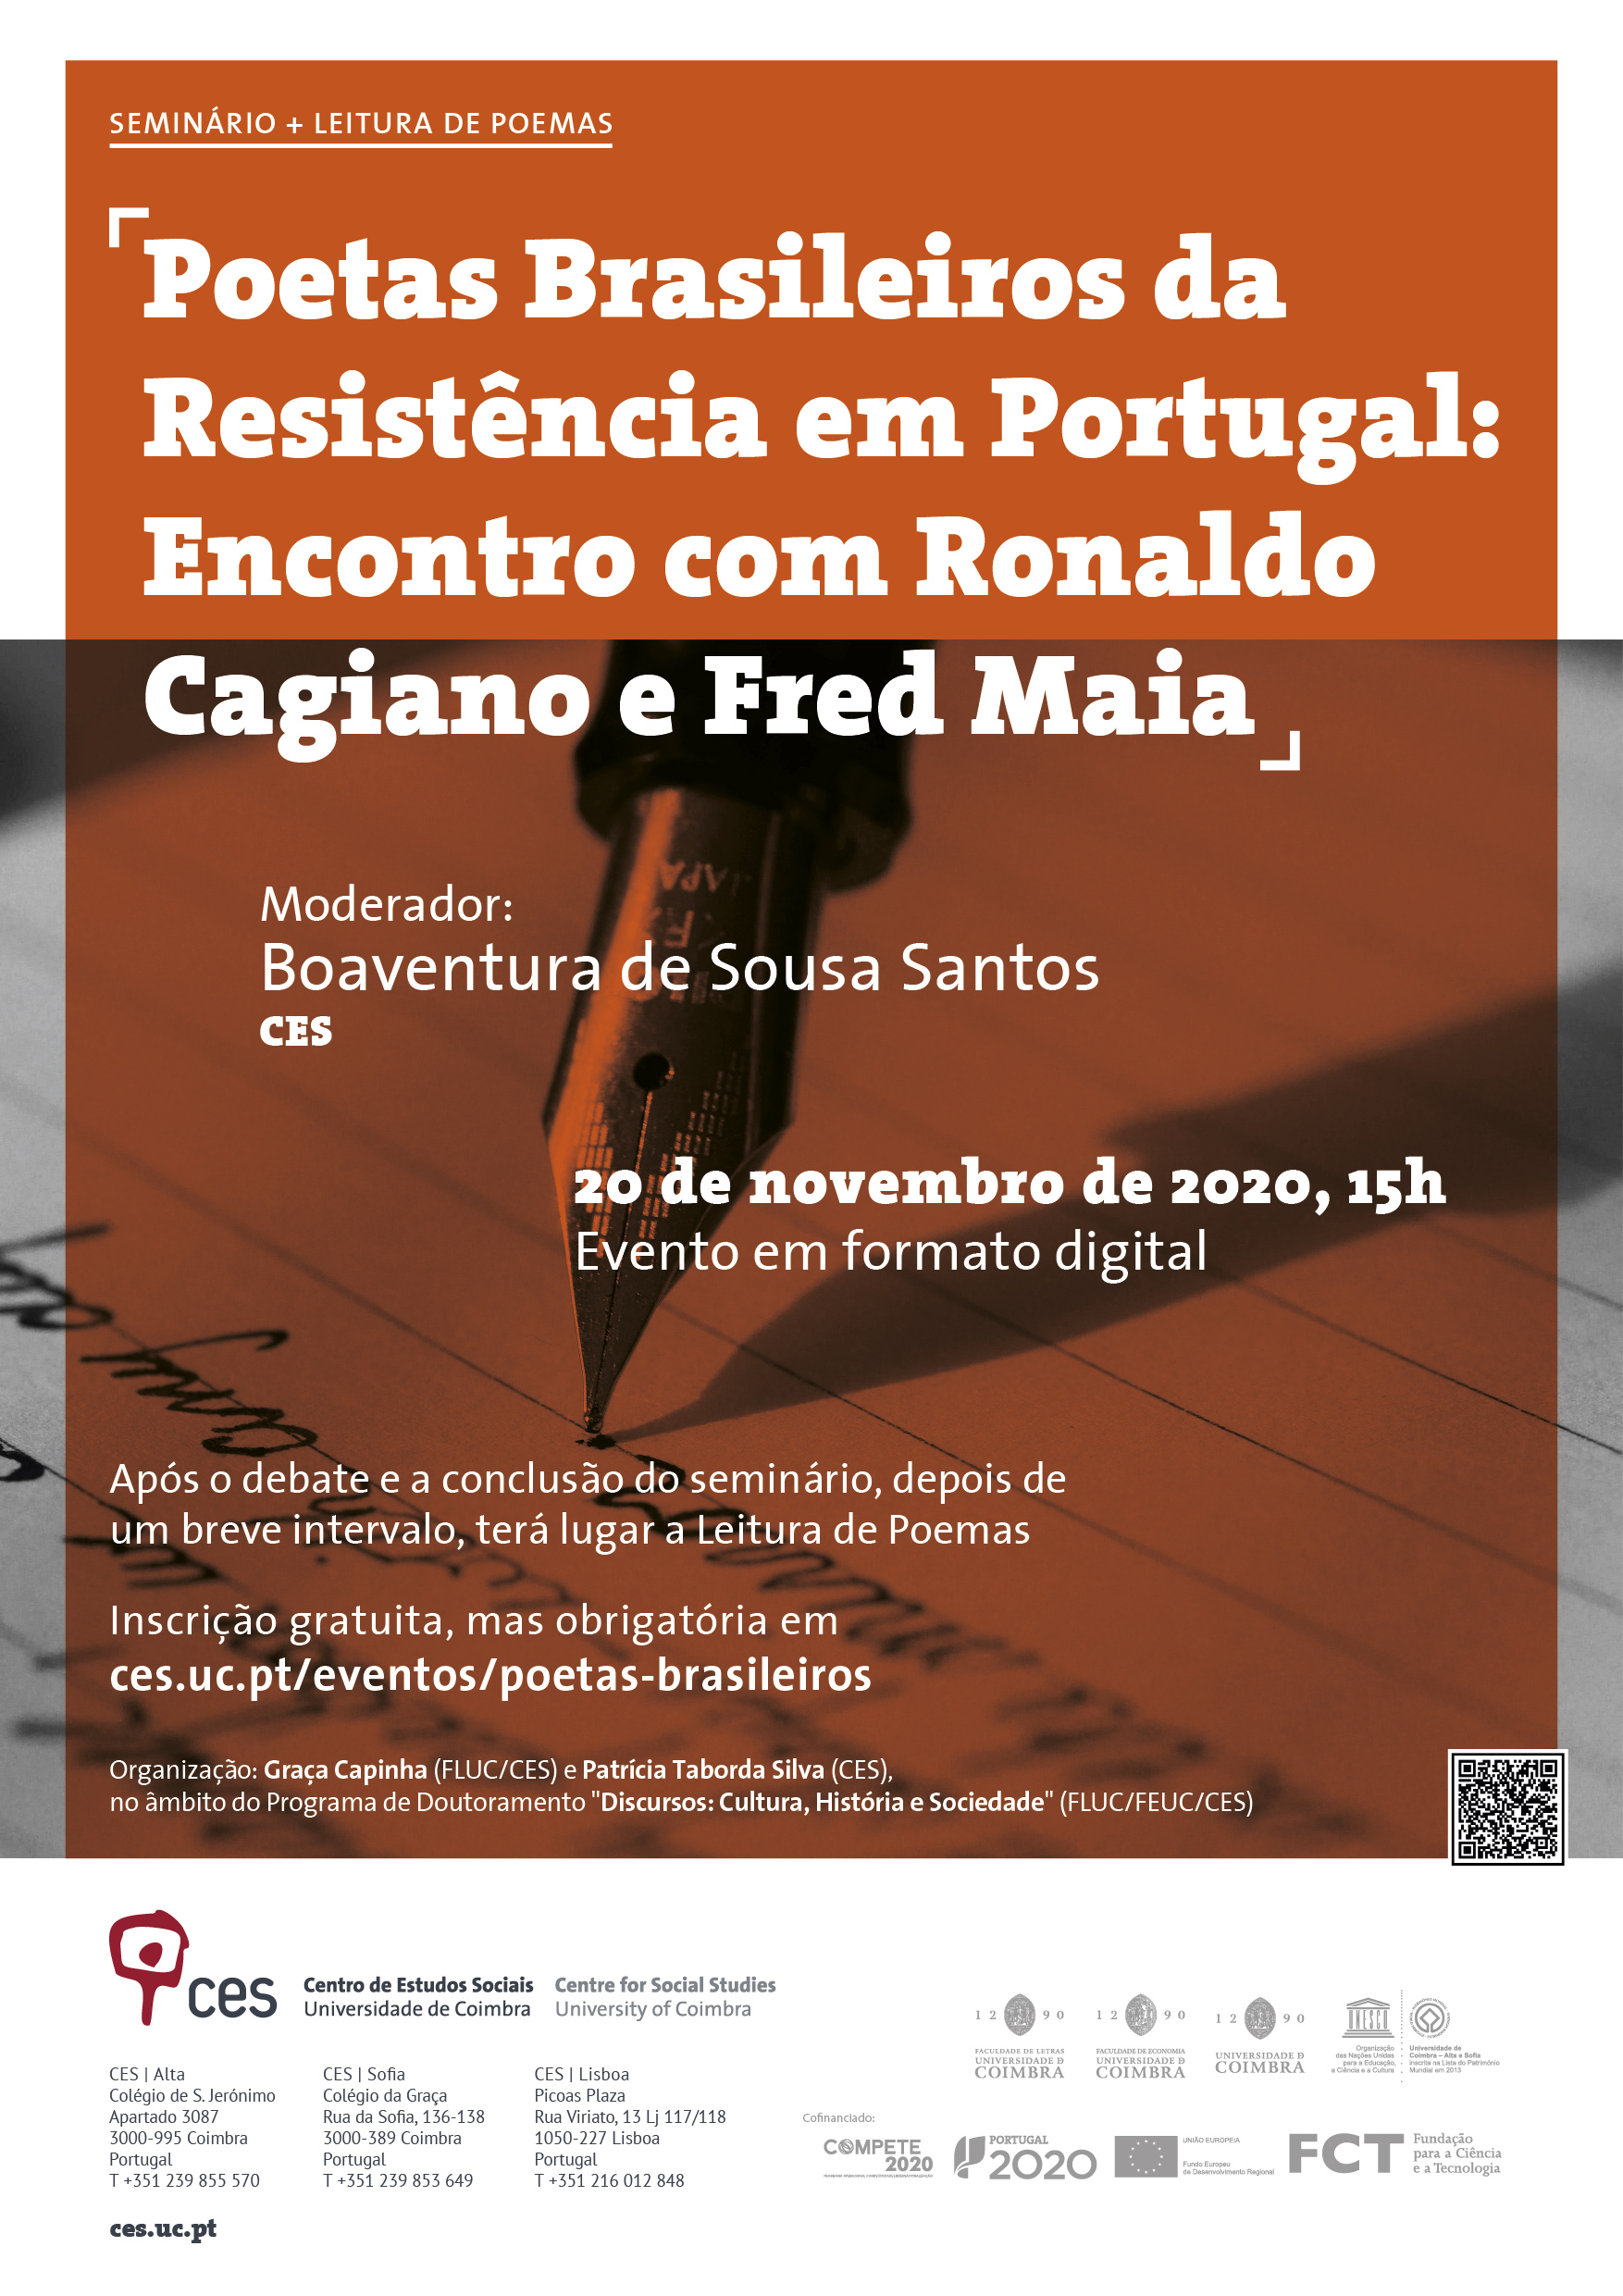 Poetas Brasileiros da Resistência em Portugal: Encontro com Ronaldo Cagiano e Fred Maia<span id="edit_31117"><script>$(function() { $('#edit_31117').load( "/myces/user/editobj.php?tipo=evento&id=31117" ); });</script></span>